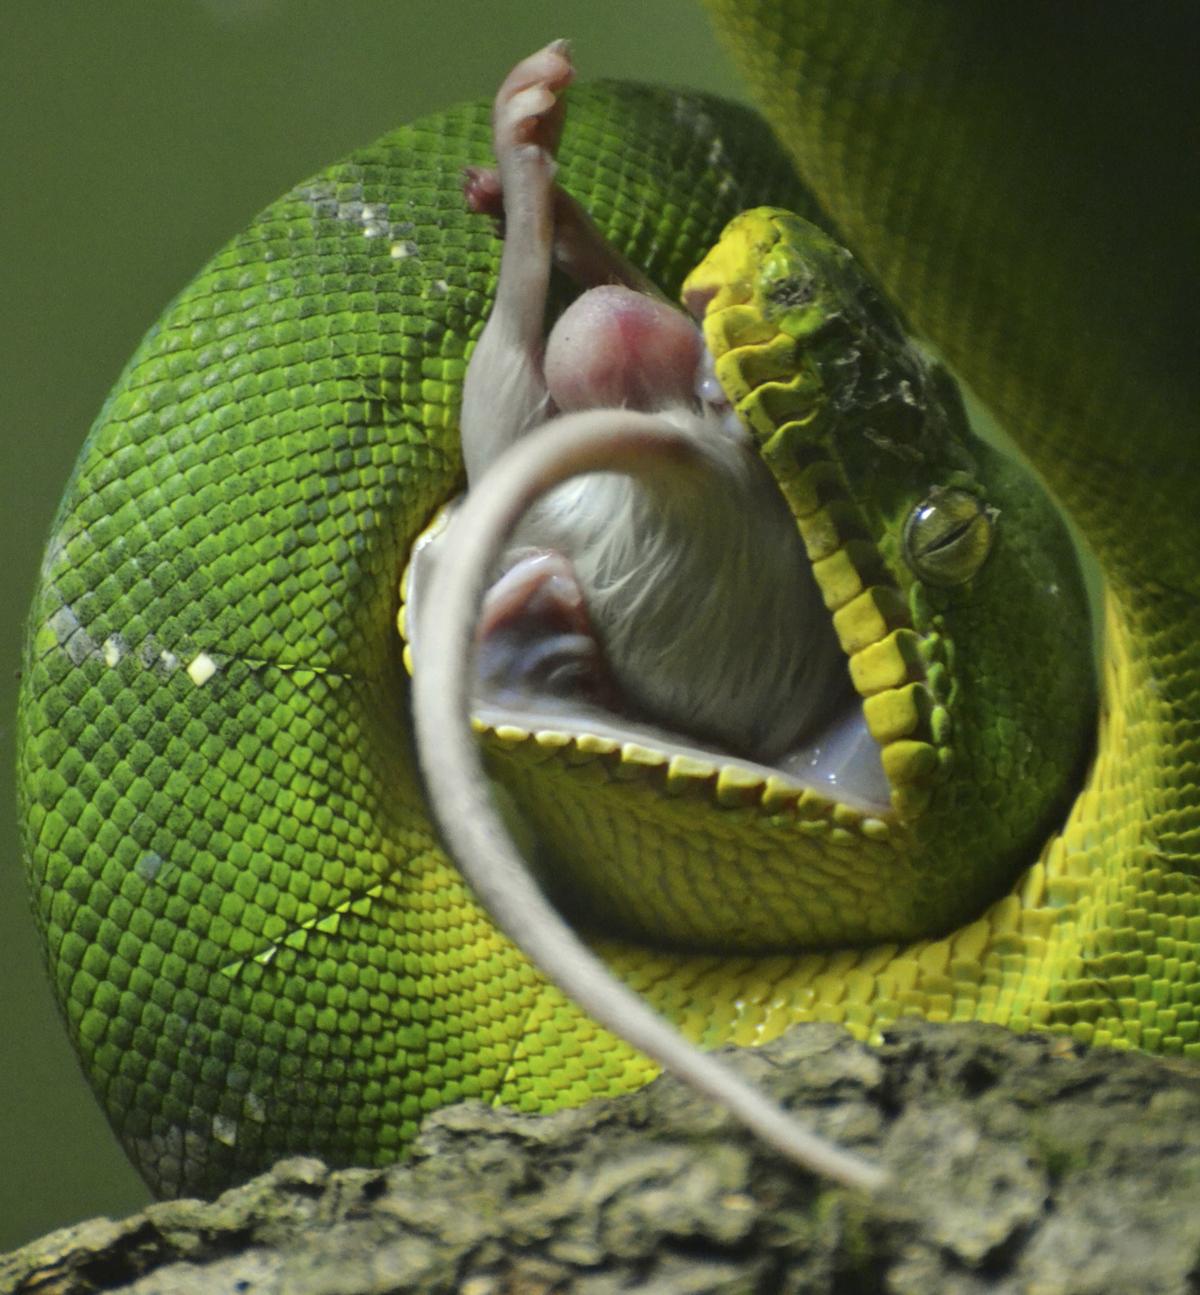 Pet snake break at anus